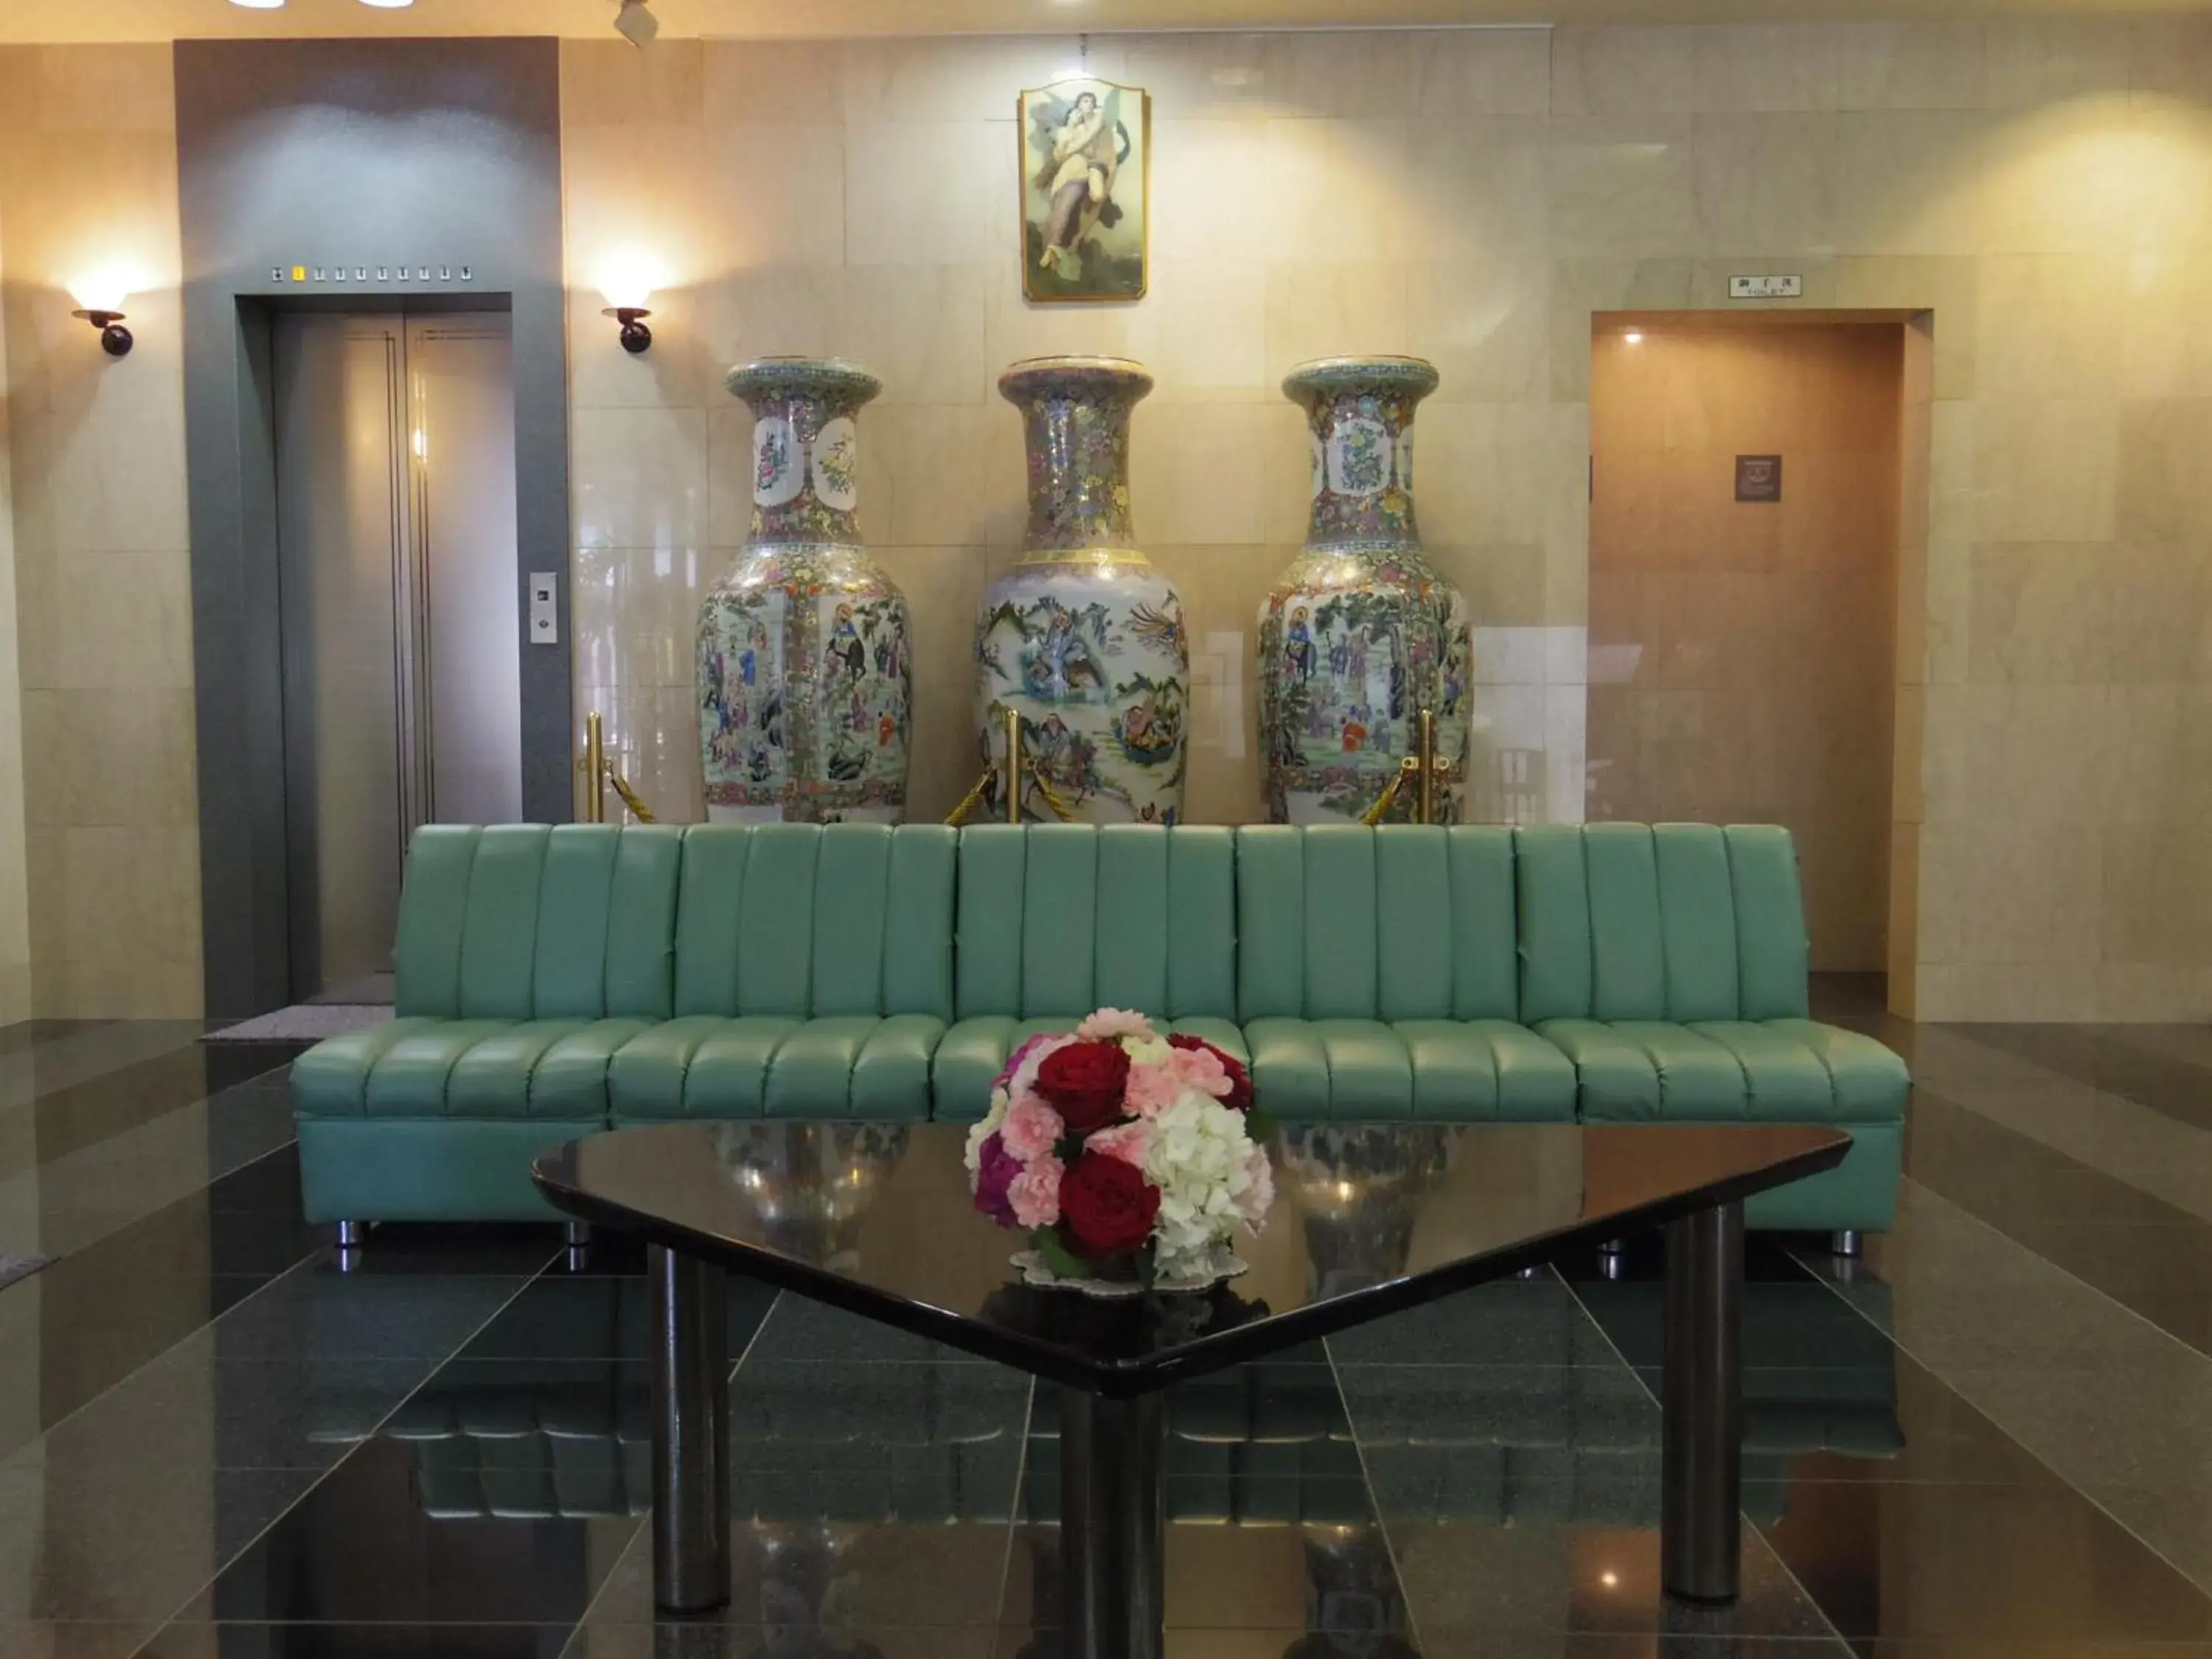 Lobby or reception in Minami Fukuoka Green Hotel